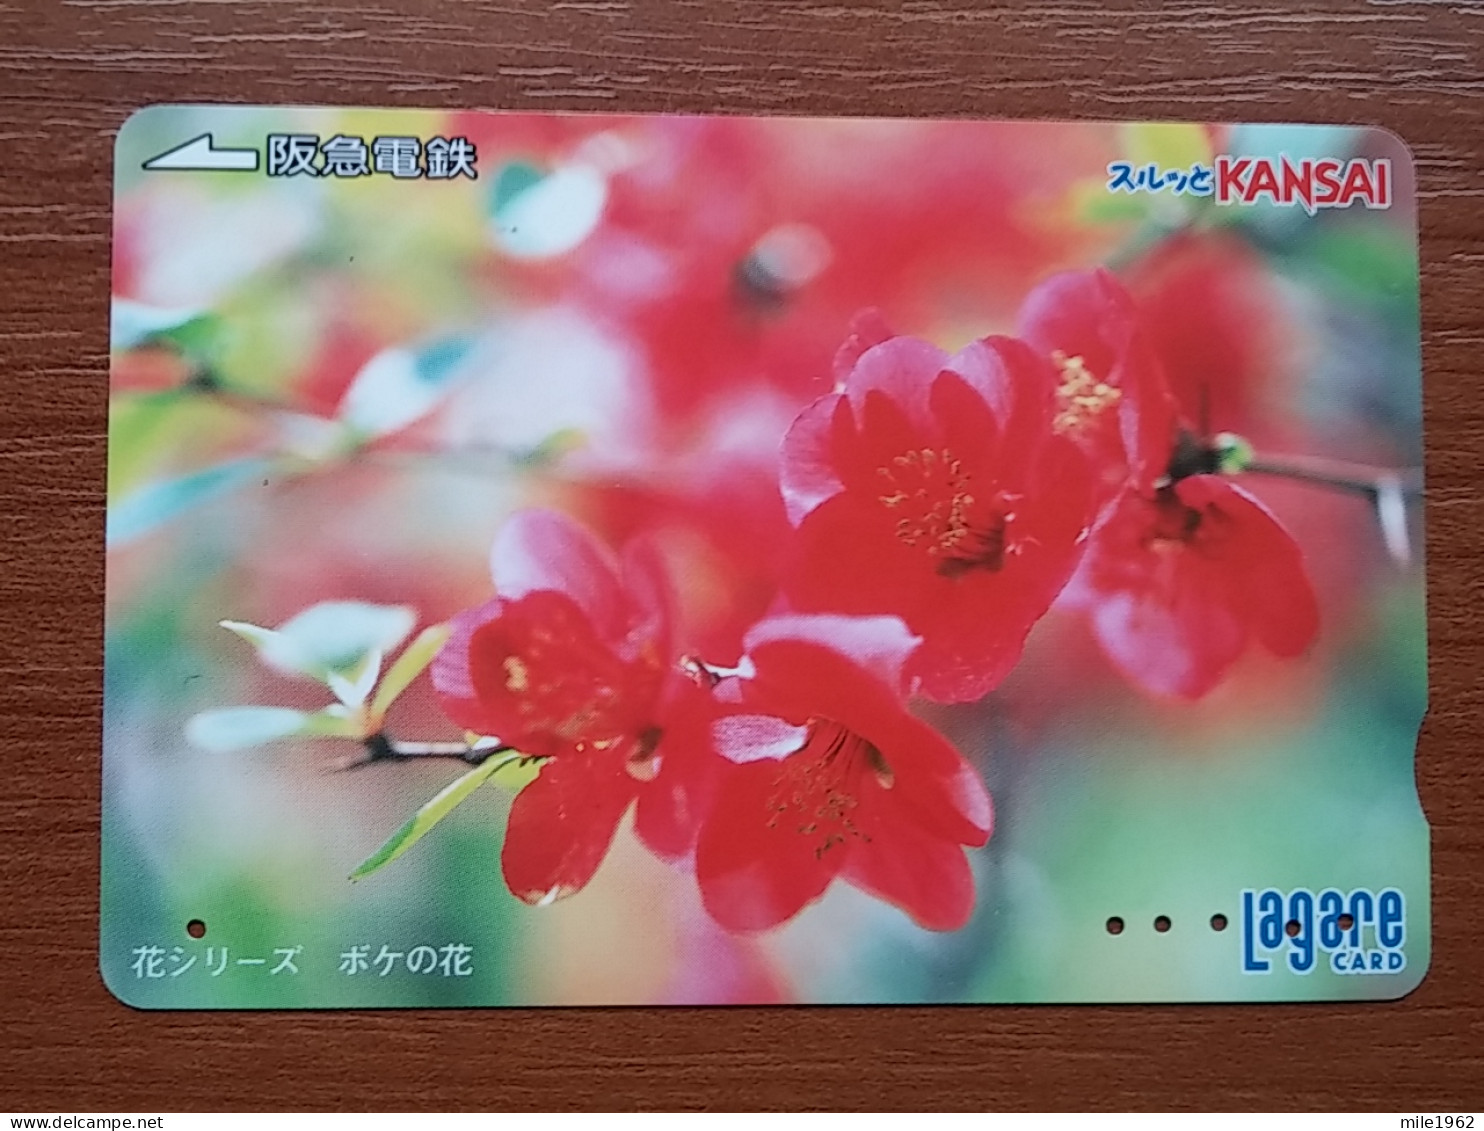 T-409 - JAPAN, Japon, Nipon, Carte Prepayee, Prepaid Card, Flower, Fleur - Flowers